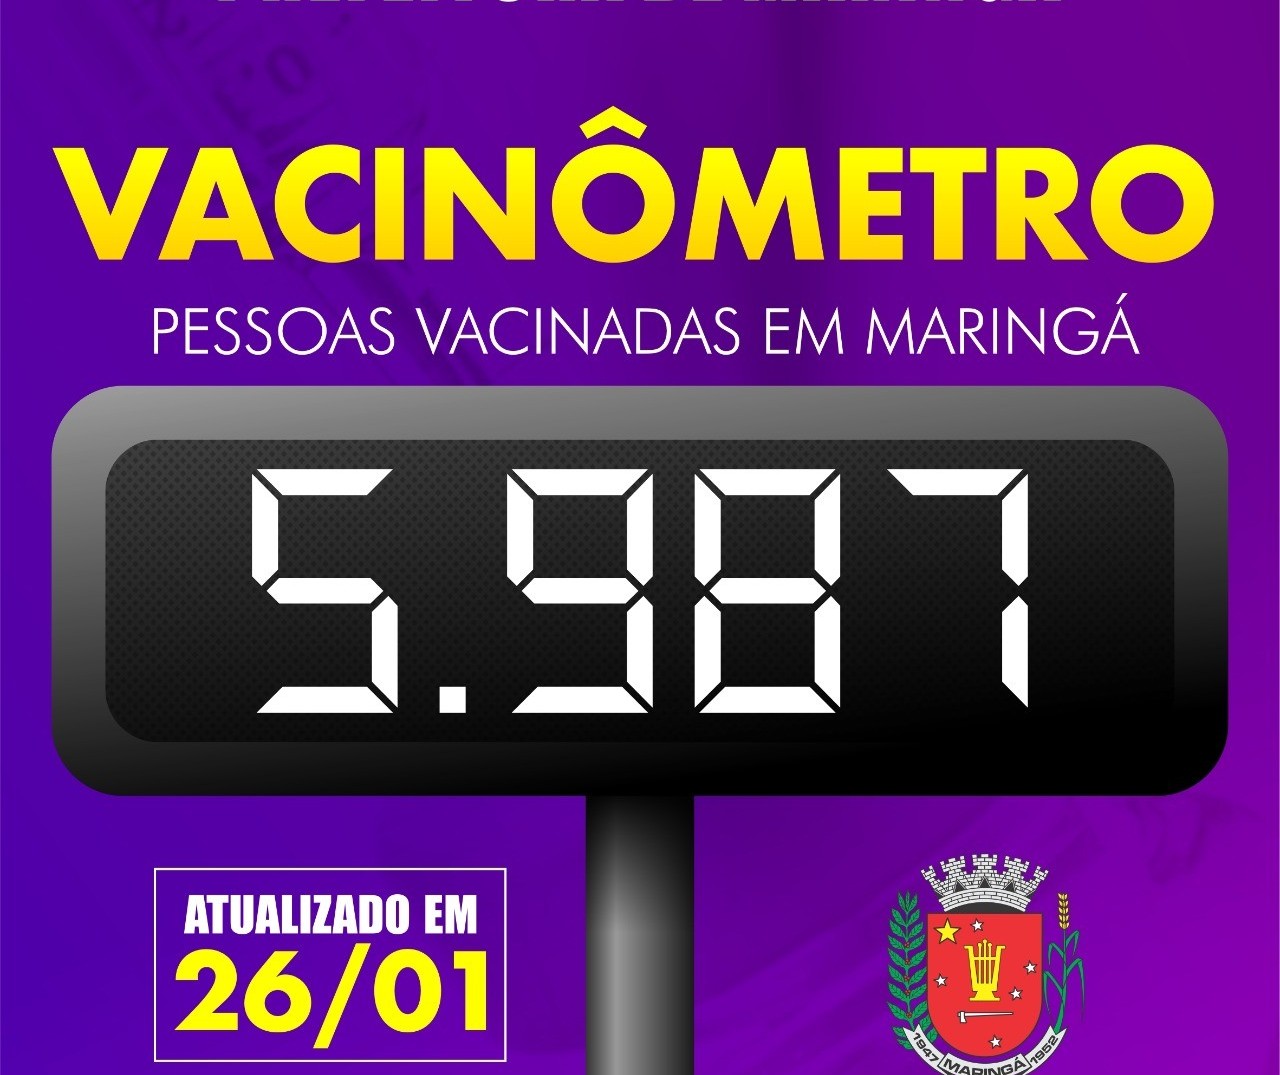 Covid-19: Maringá vacinou 532 pessoas nesta terça-feira; total chega a 5.987